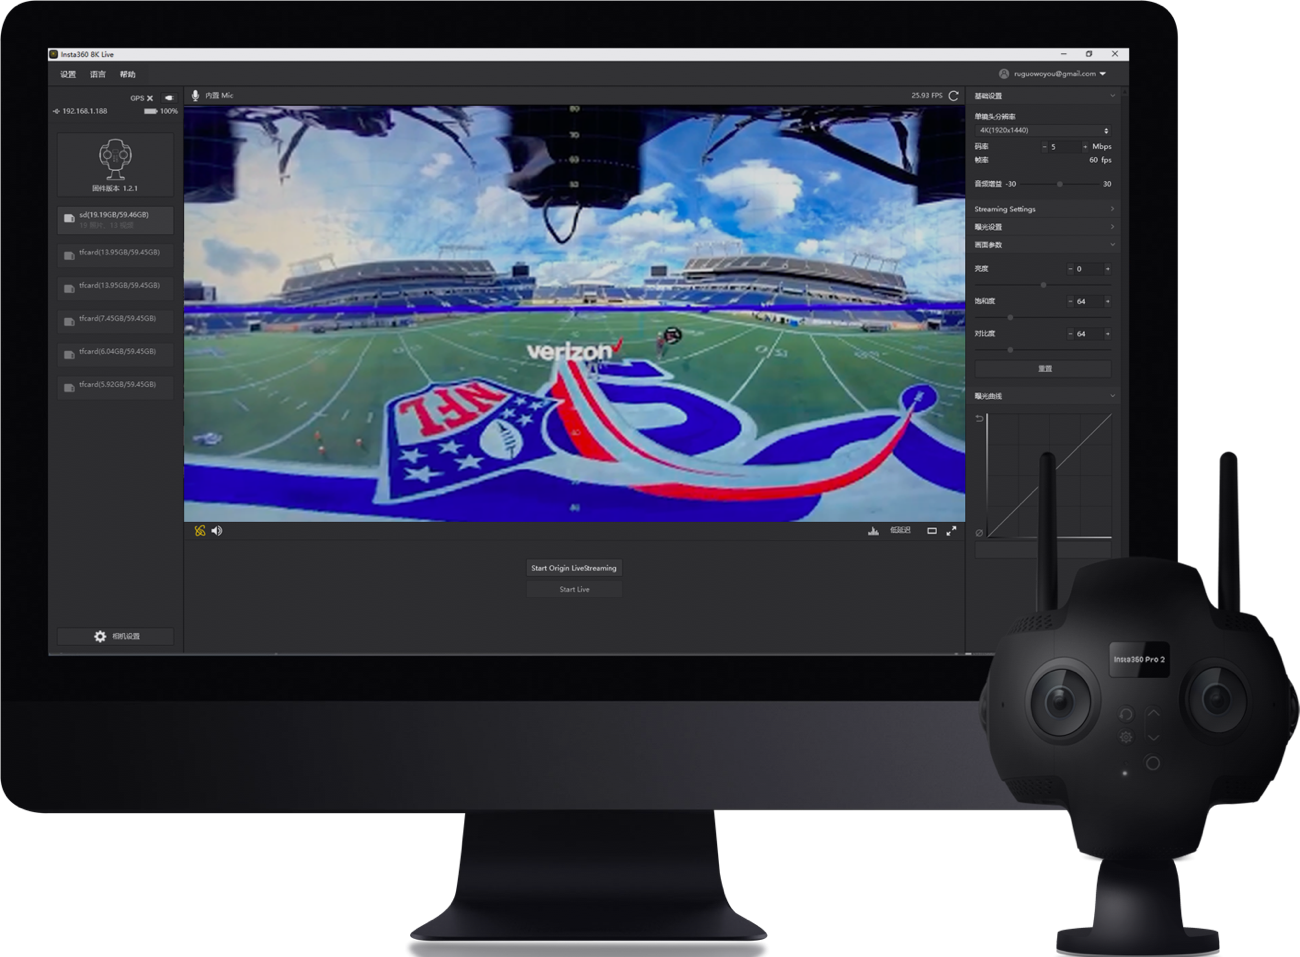 מצלמה מקצועית 360° Insta360 Pro 2 Spherical VR 8K HDR - צבע שחור שנה אחריות ע"י היבואן הרשמי